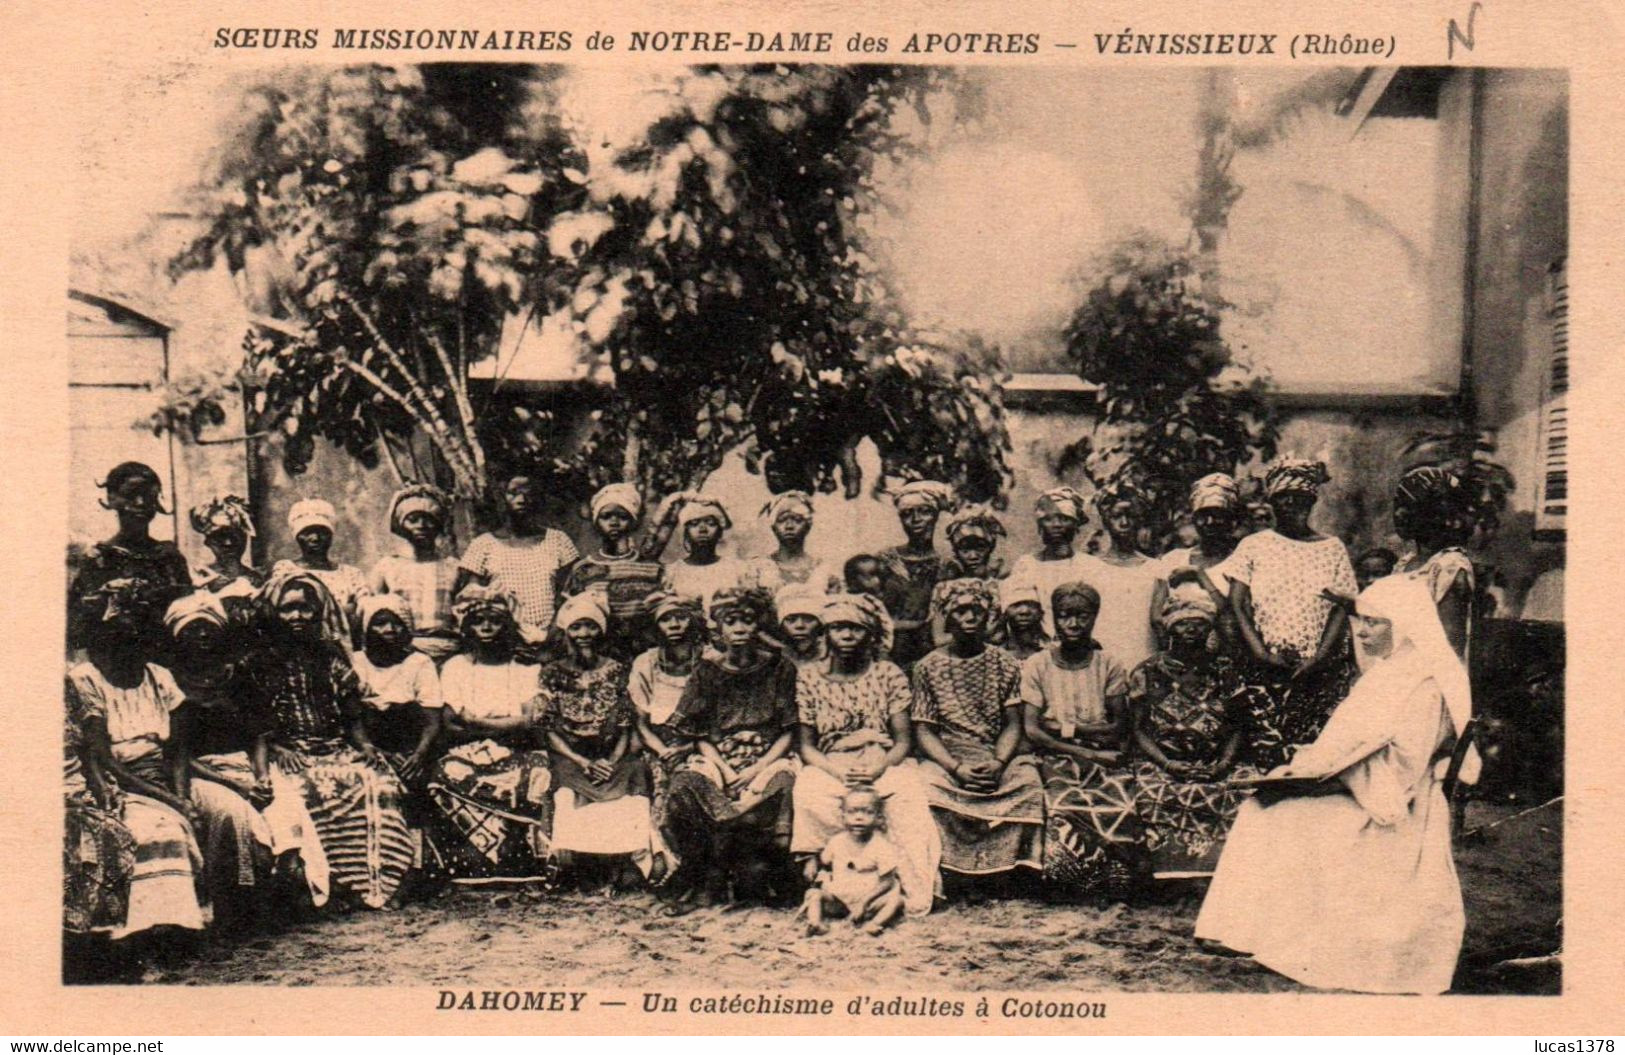 DAHOMEY / UN CATECHISME D ADULTES A COTONOU / SOEURS MISSIONNAIRES DE VENISSIEUX - Dahomey